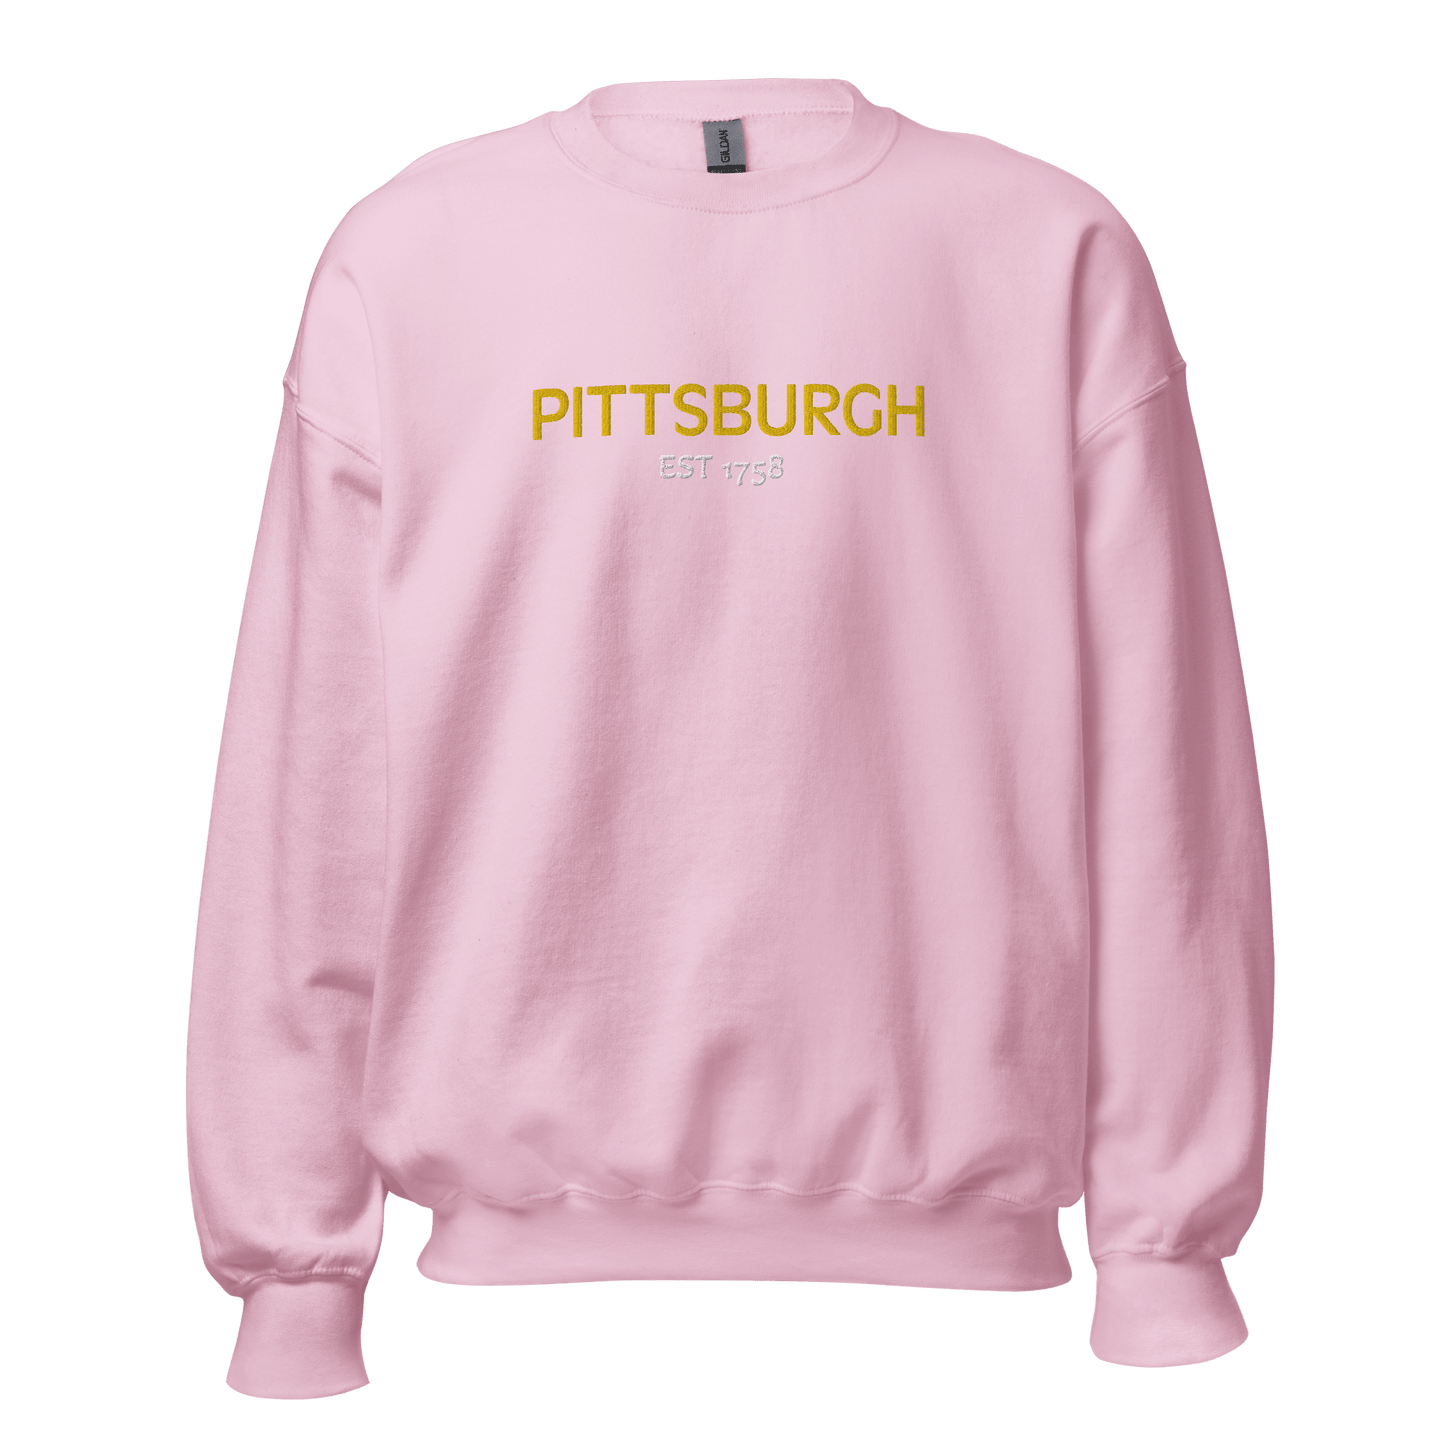 Embroidered Pittsburgh EST 1758 Sweatshirt Yinzergear Light Pink S 